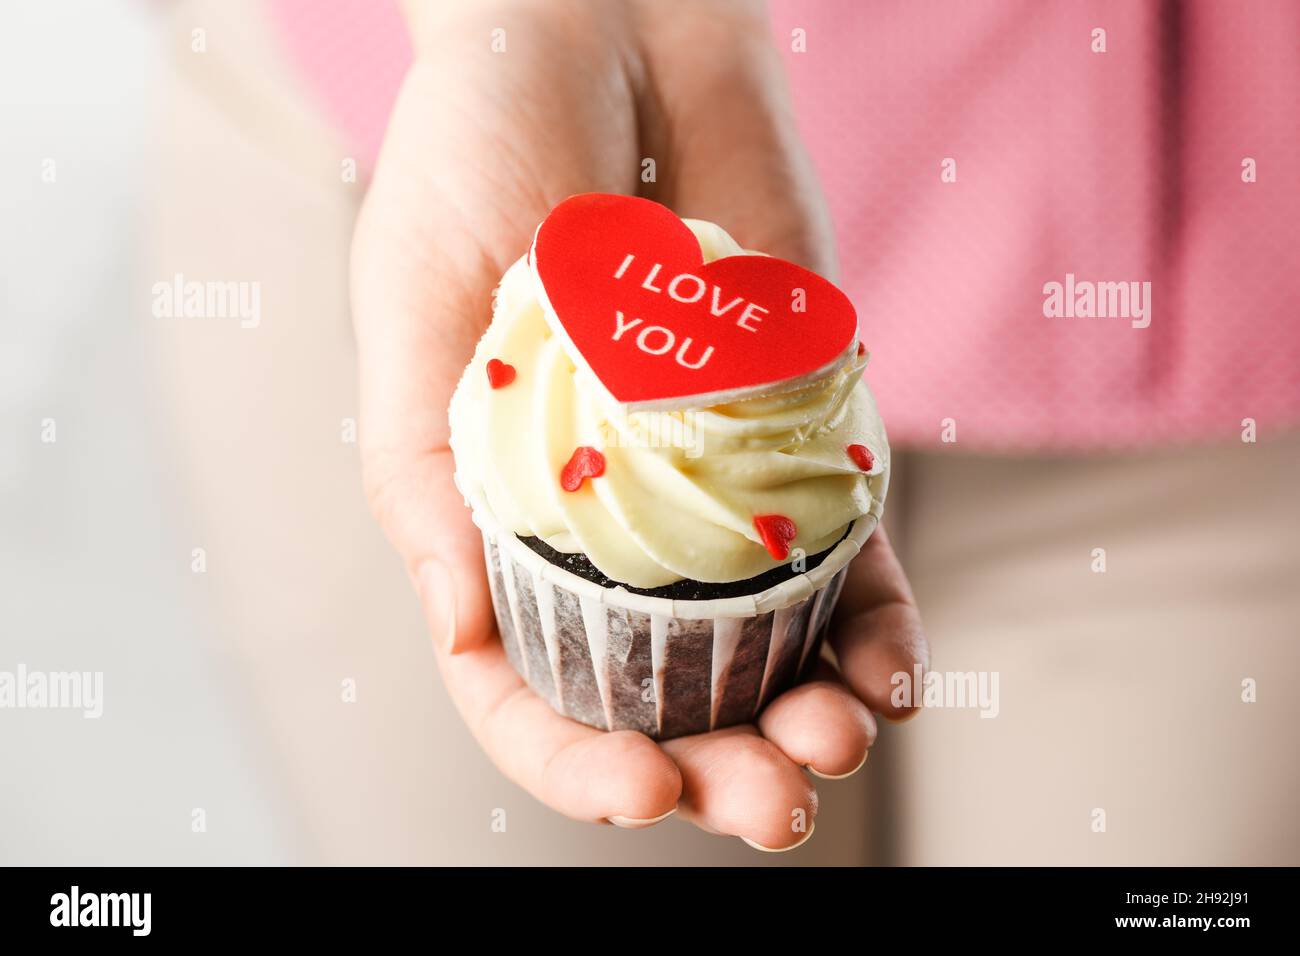 Fille tenant un gâteau en forme de coeur avec l'inscription Je t'aime.Cupcake en forme de coeur, gros plan Banque D'Images